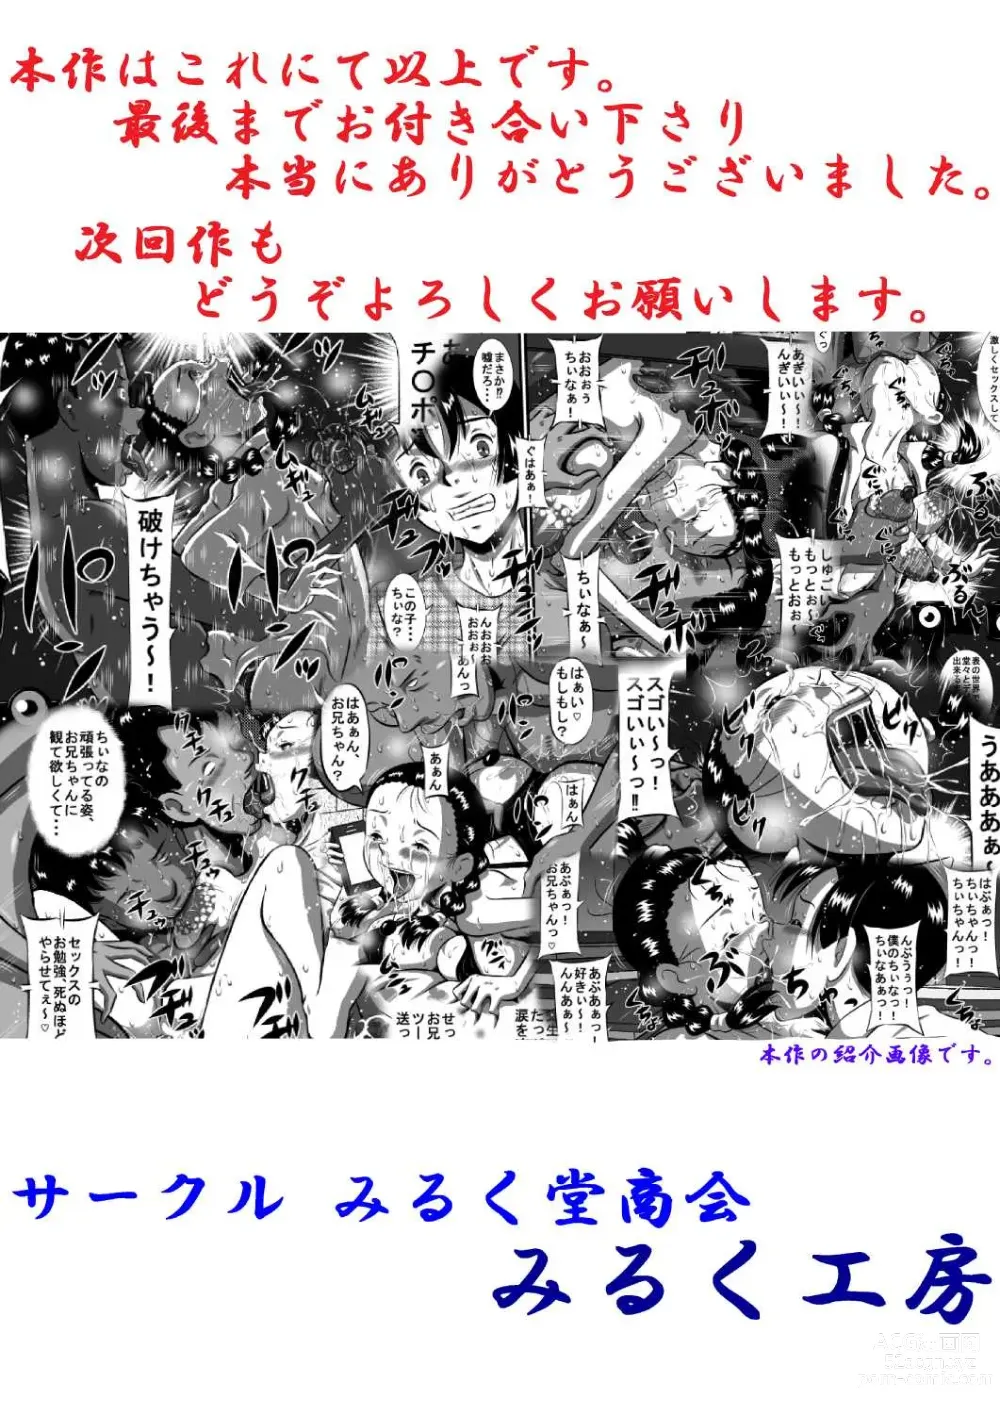 Page 181 of doujinshi Okasaresou no Chiina-chan! Nude Model no Tamago, Chiina no Nikutai Seichou Kiroku! Kouhen Minna de Chiina no Ochichi, Konekurimawashite~!